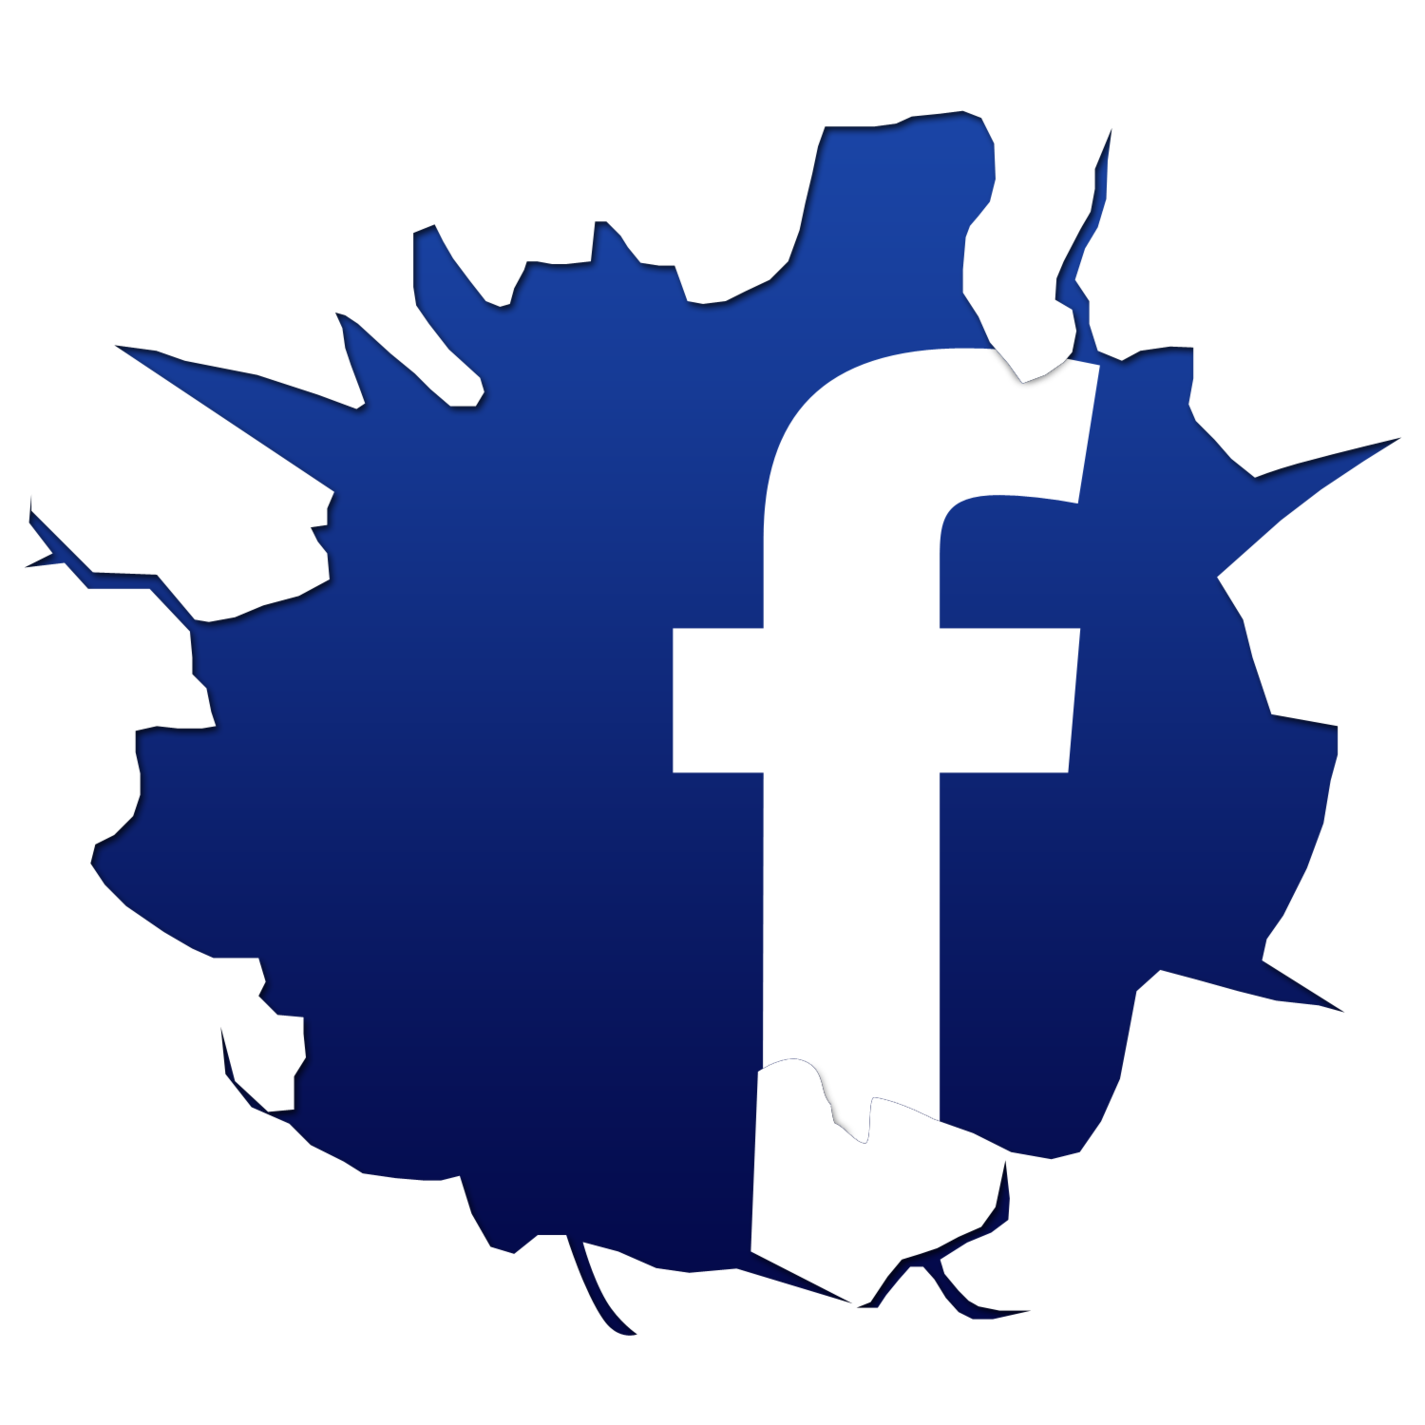 Facebook logo icon clipart - Clipartix